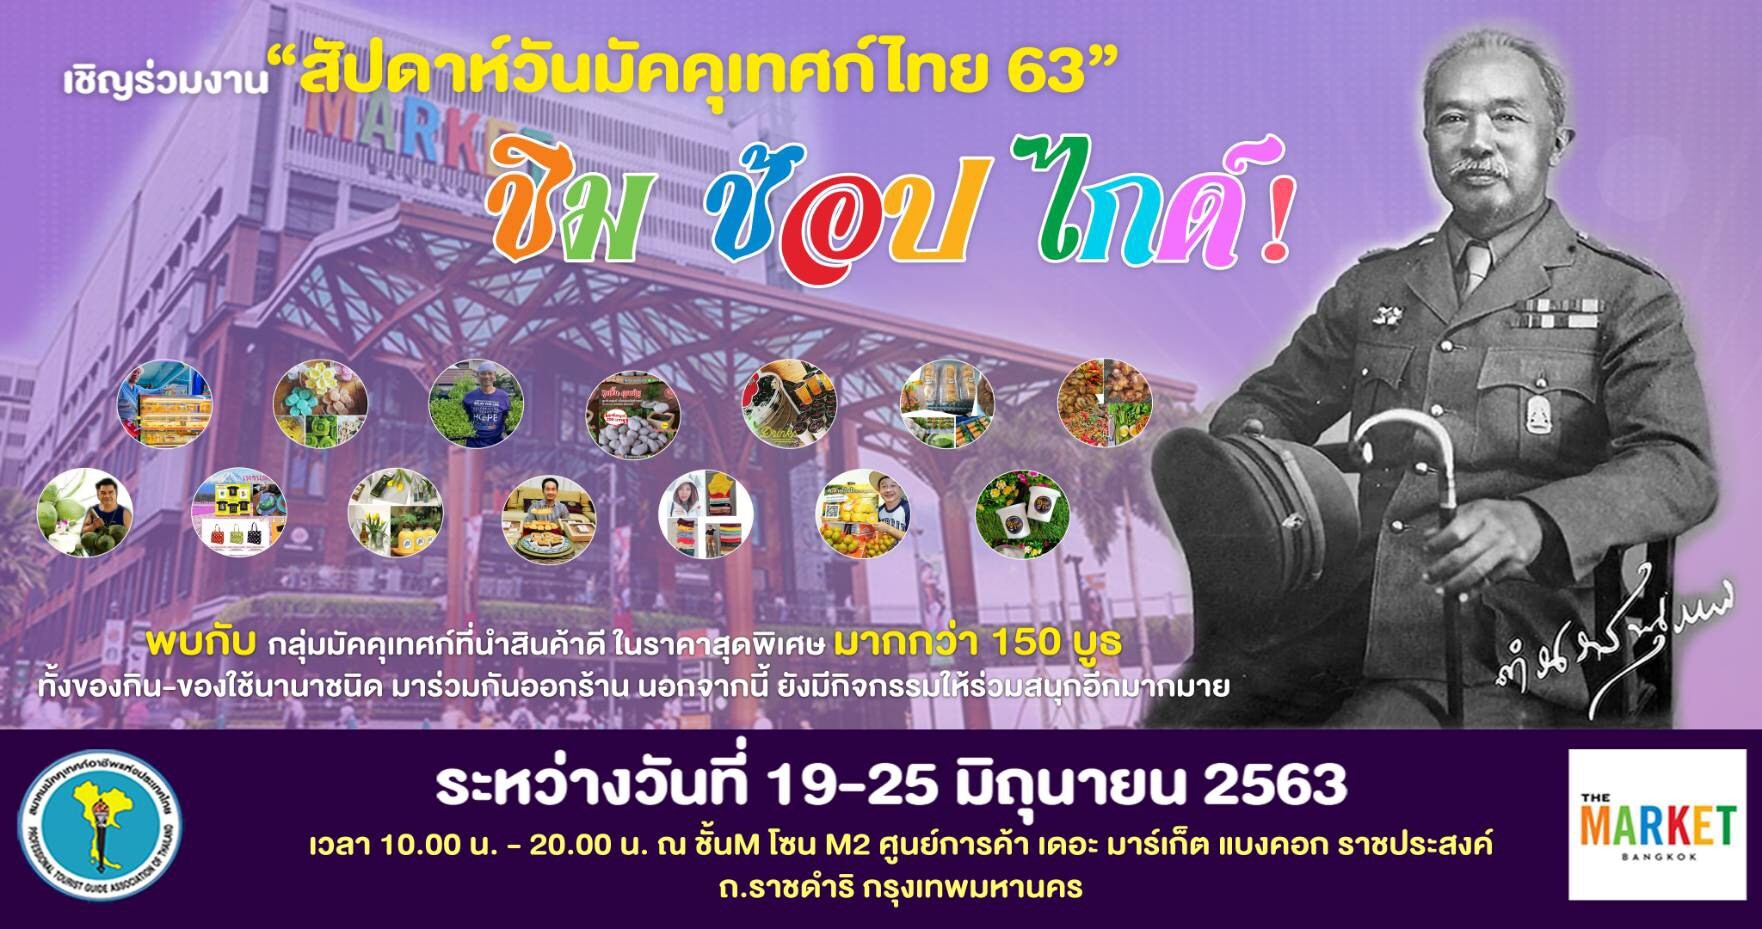 ชวน ชิม ช้อป ไกด์ ในงาน “สัปดาห์วันมัคคุเทศก์ไทย 63”